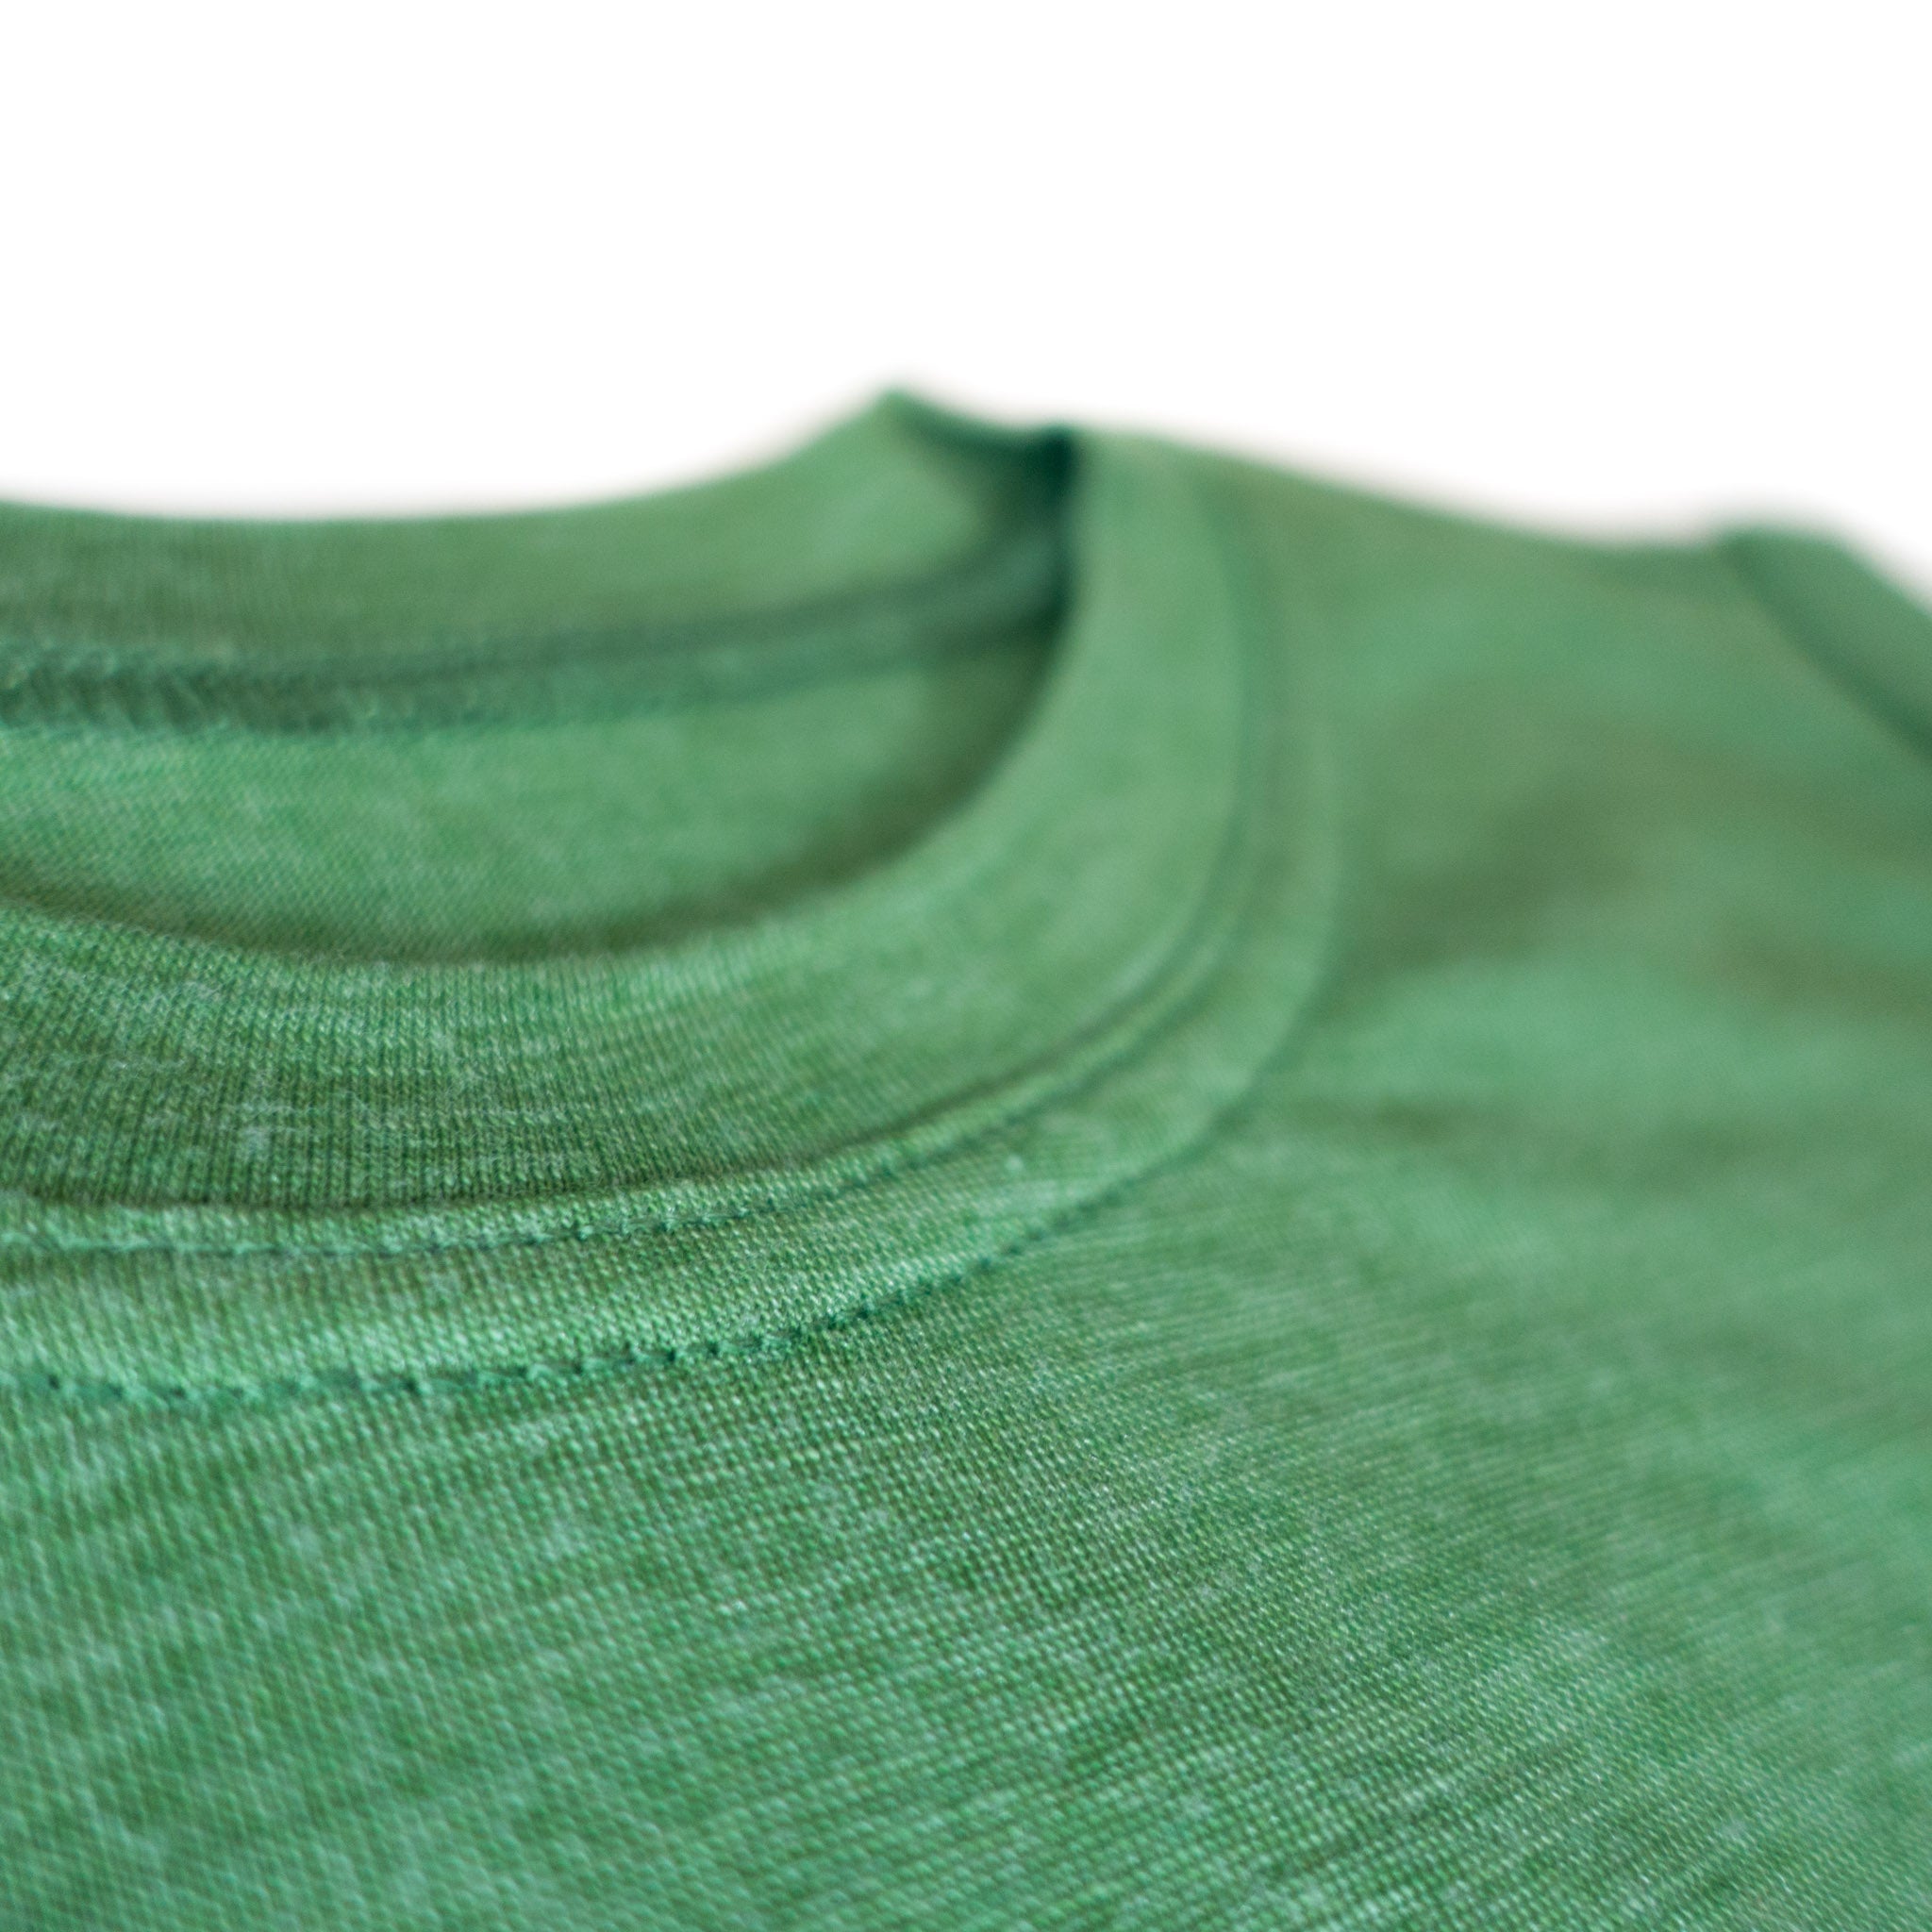 Glückskind Shirt | Merinowolle & Seide (bio/GOTS) - waldgrün Salamander 122-128 mulesing frei, kbA, kbT, nachhaltig, individuelles Mode Label aus Salzburg